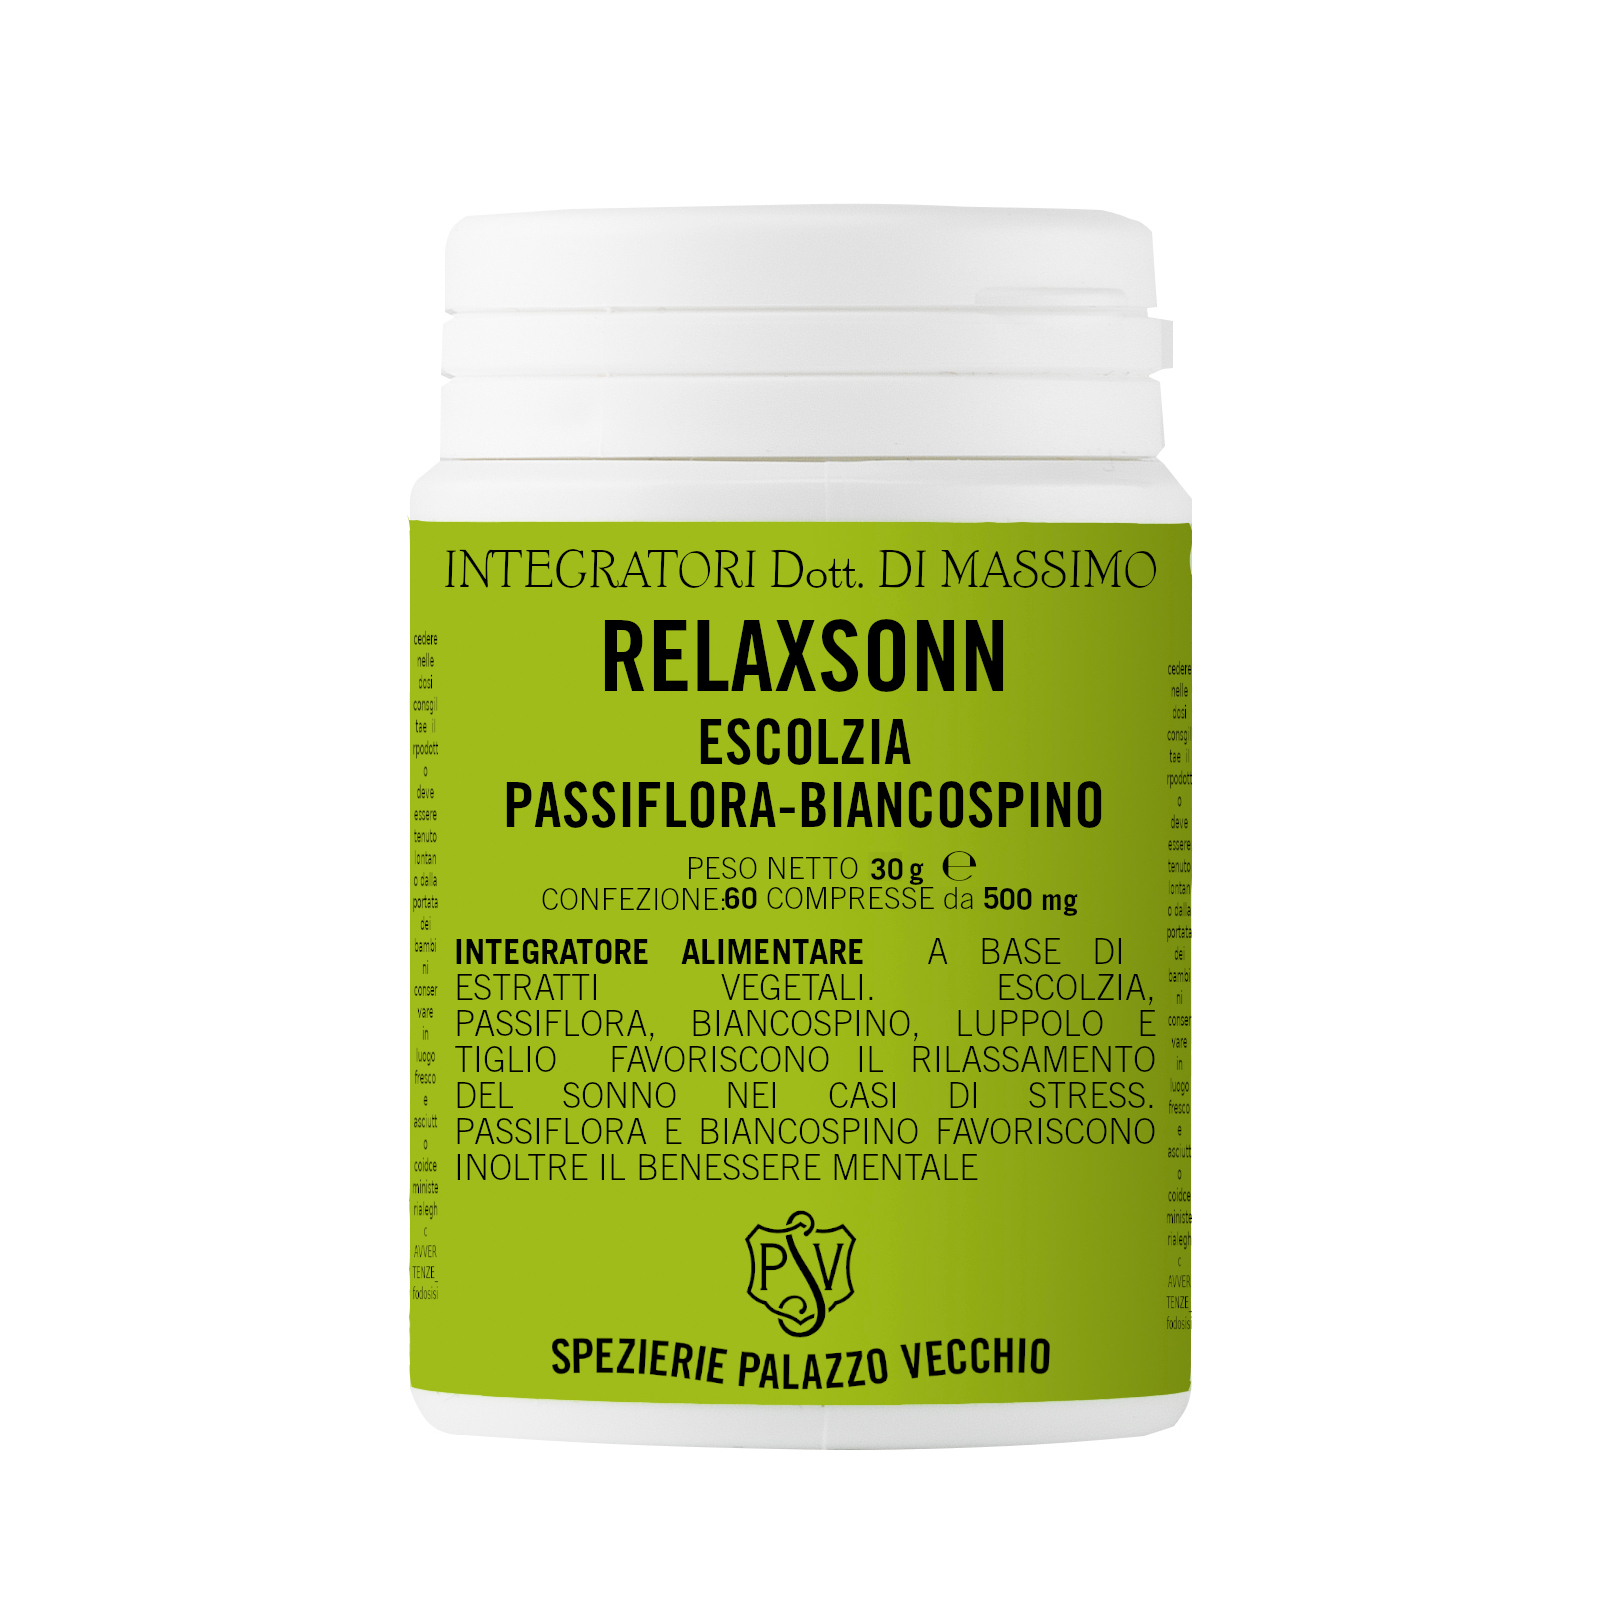 RELAXSONN Escolzia - Passiflora - Biancospino-0